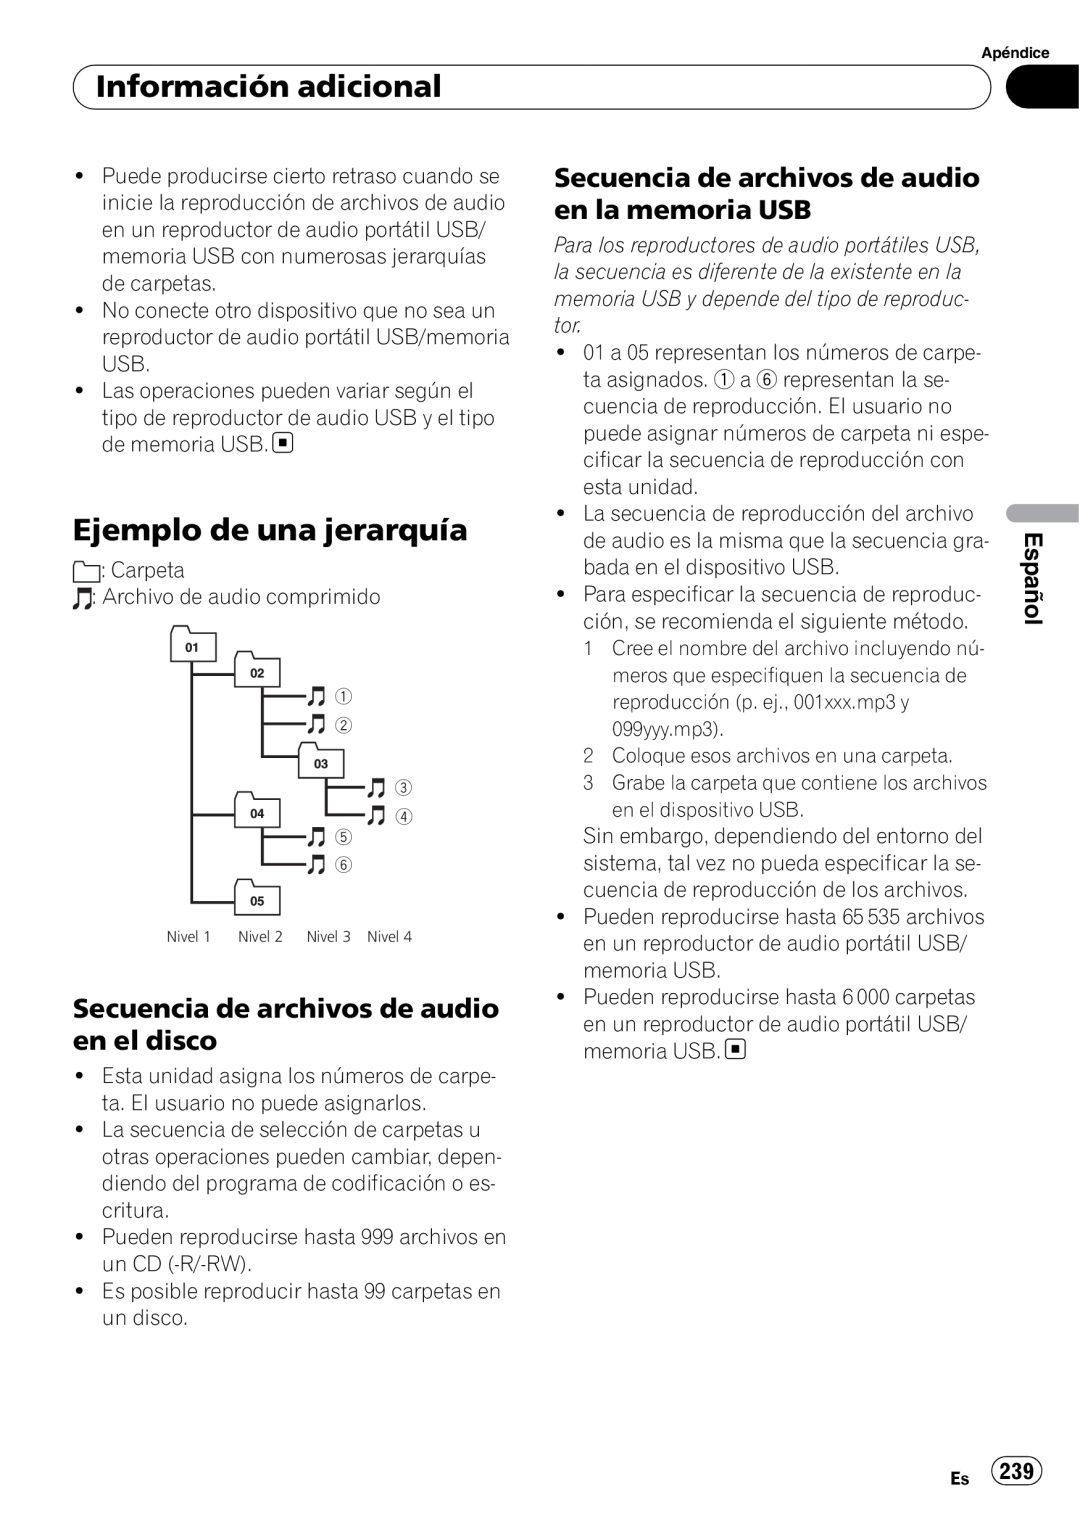 Pioneer DEH-P7100BT Ejemplo de una jerarquía, Secuencia de archivos de audio en el disco, Información adicional, Español 